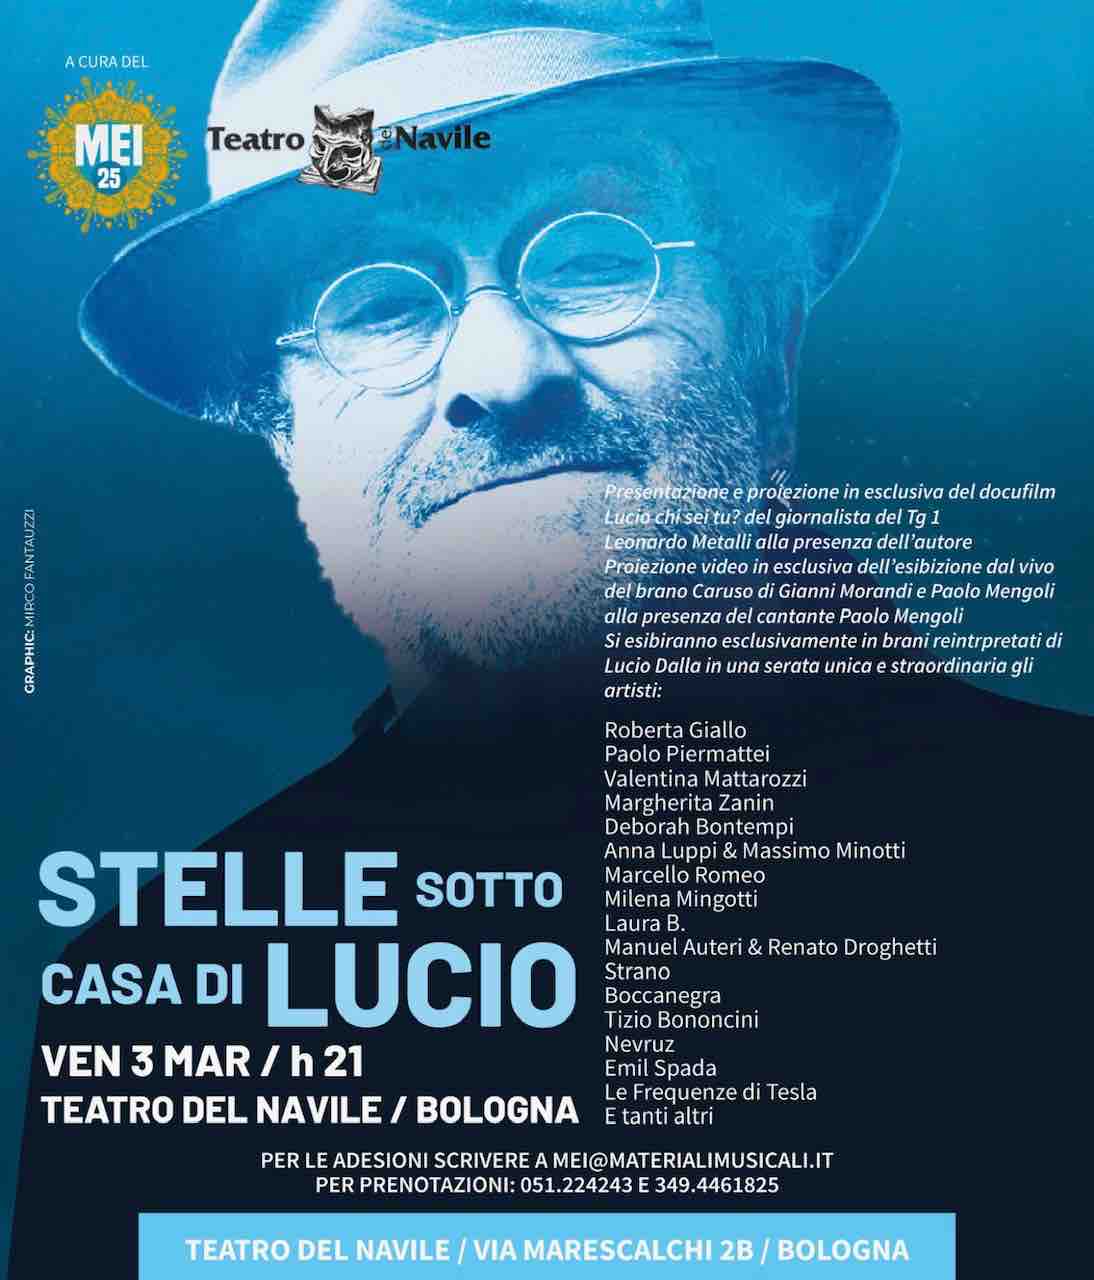 Venerdi 3 Marzo al Teatro del Navile a Bologna Arriva Stelle Sotto La Casa Di Lucio per gli 80 Anni di Lucio Dalla. Ecco Il Programma.